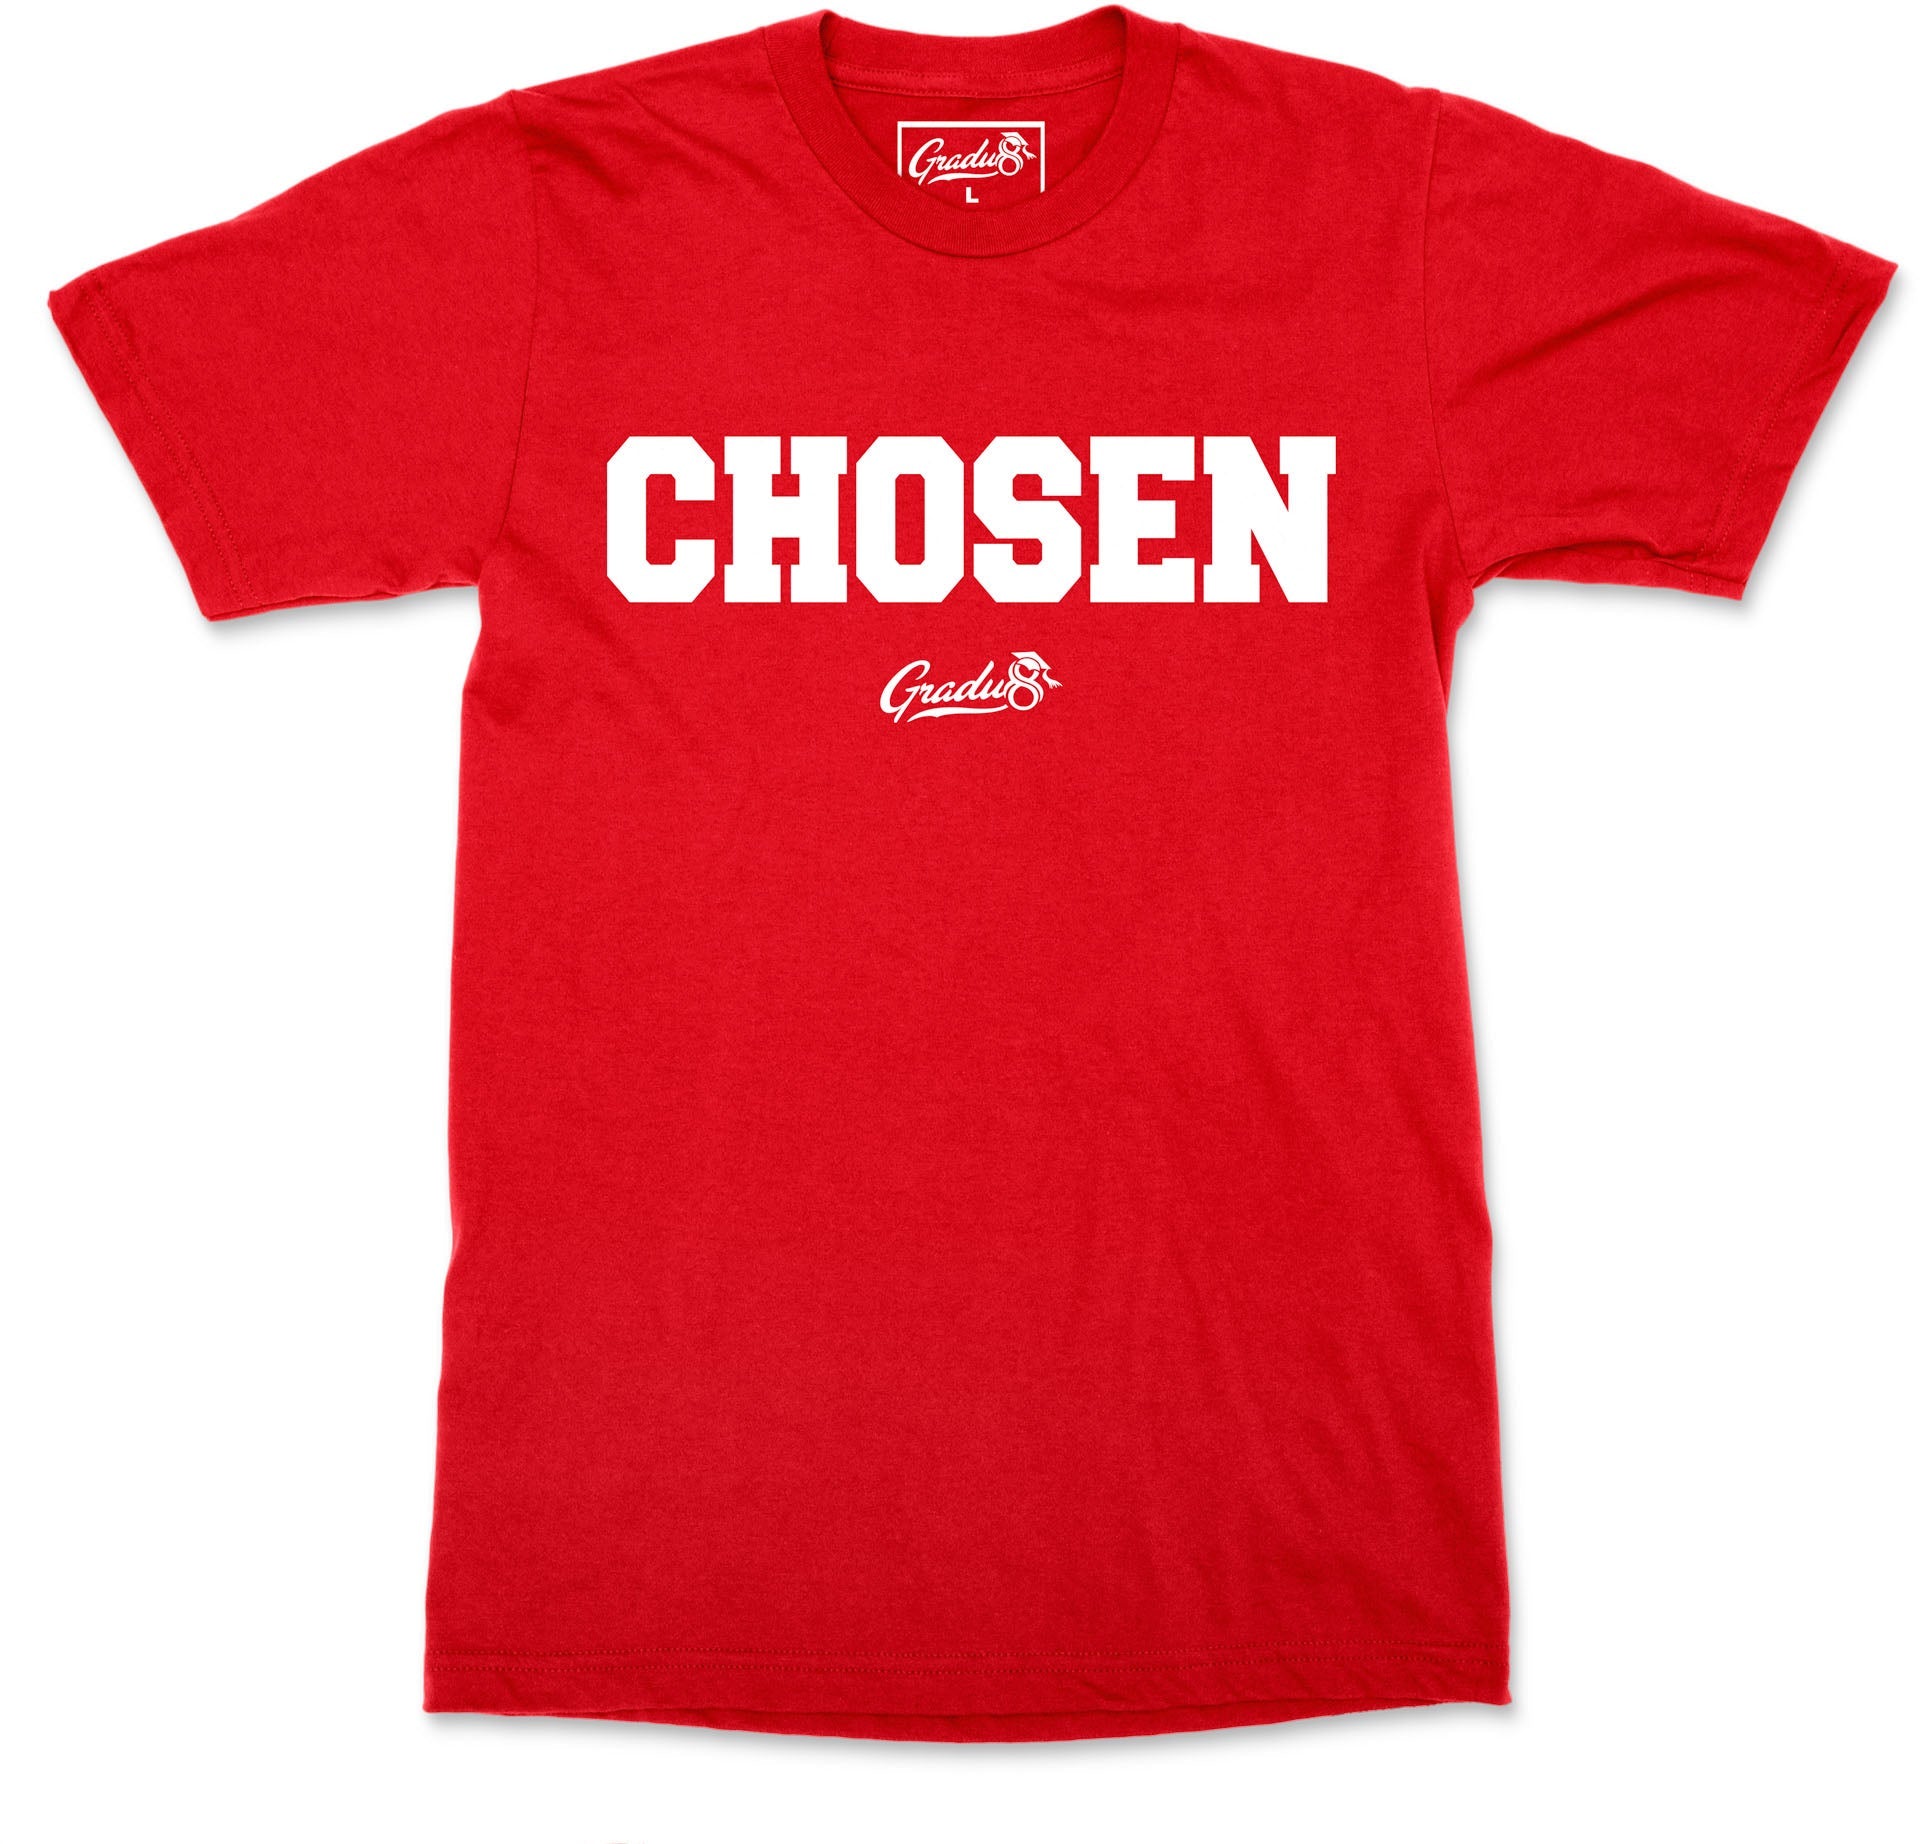 Chosen T-shirt - Red